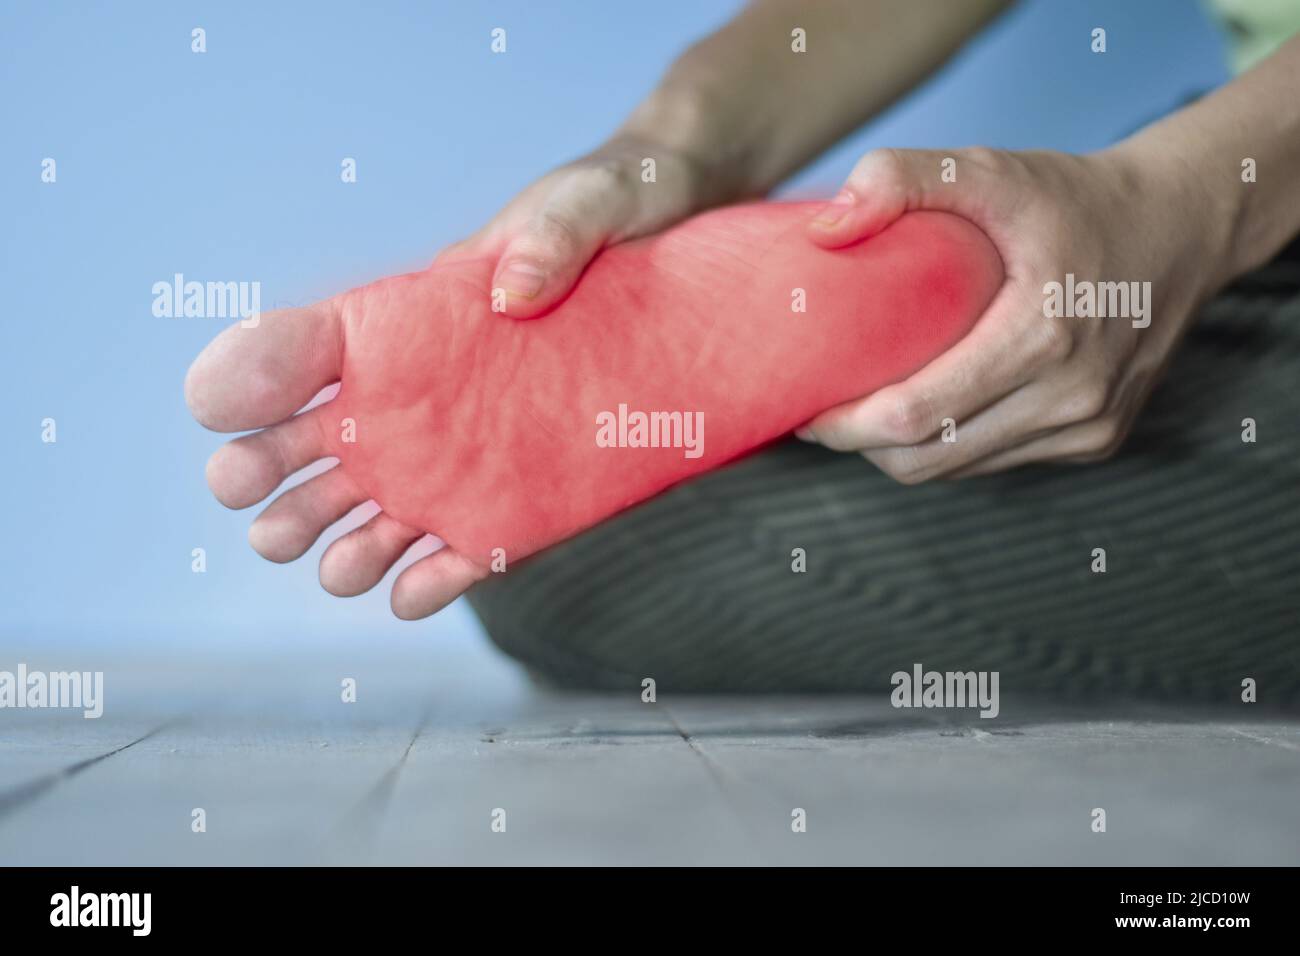 Kribbeln und Brennen im Fuß des asiatischen jungen Mannes mit Diabetes.  Fußschmerzen. Sensorische Neuropathie Probleme. Probleme mit den Fußnerven.  Plantar fasciit Stockfotografie - Alamy